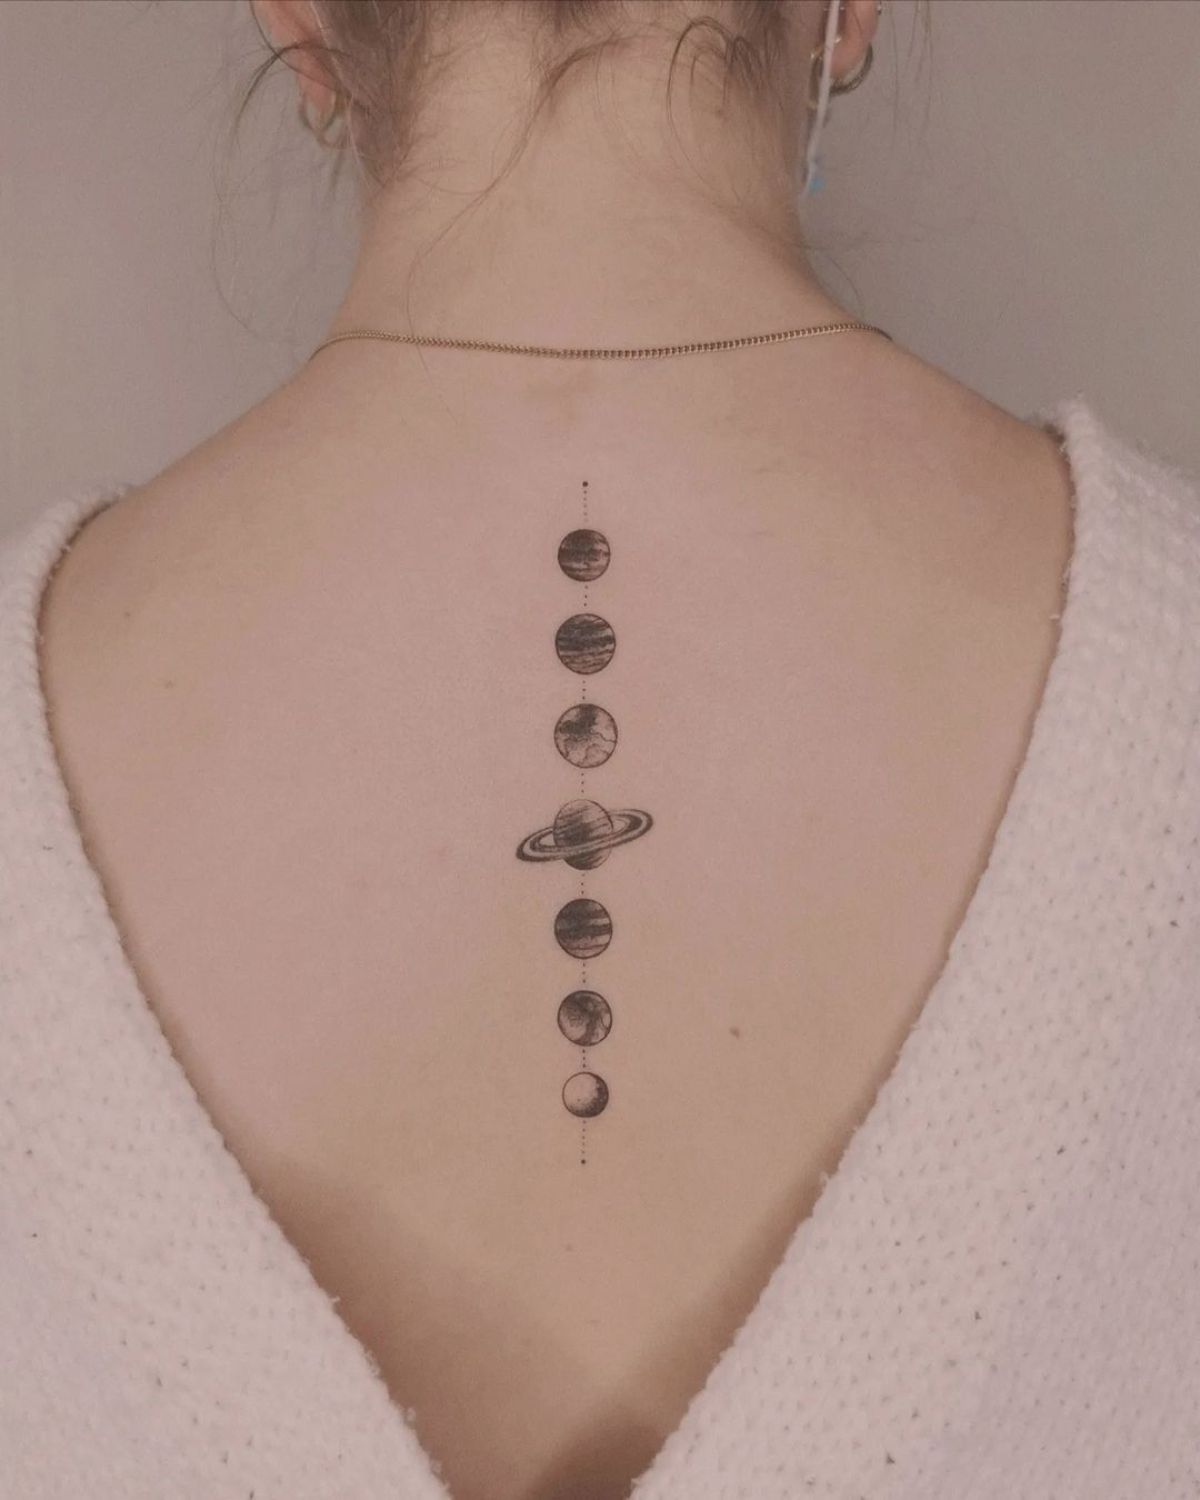 planet tattoo designs minimalist